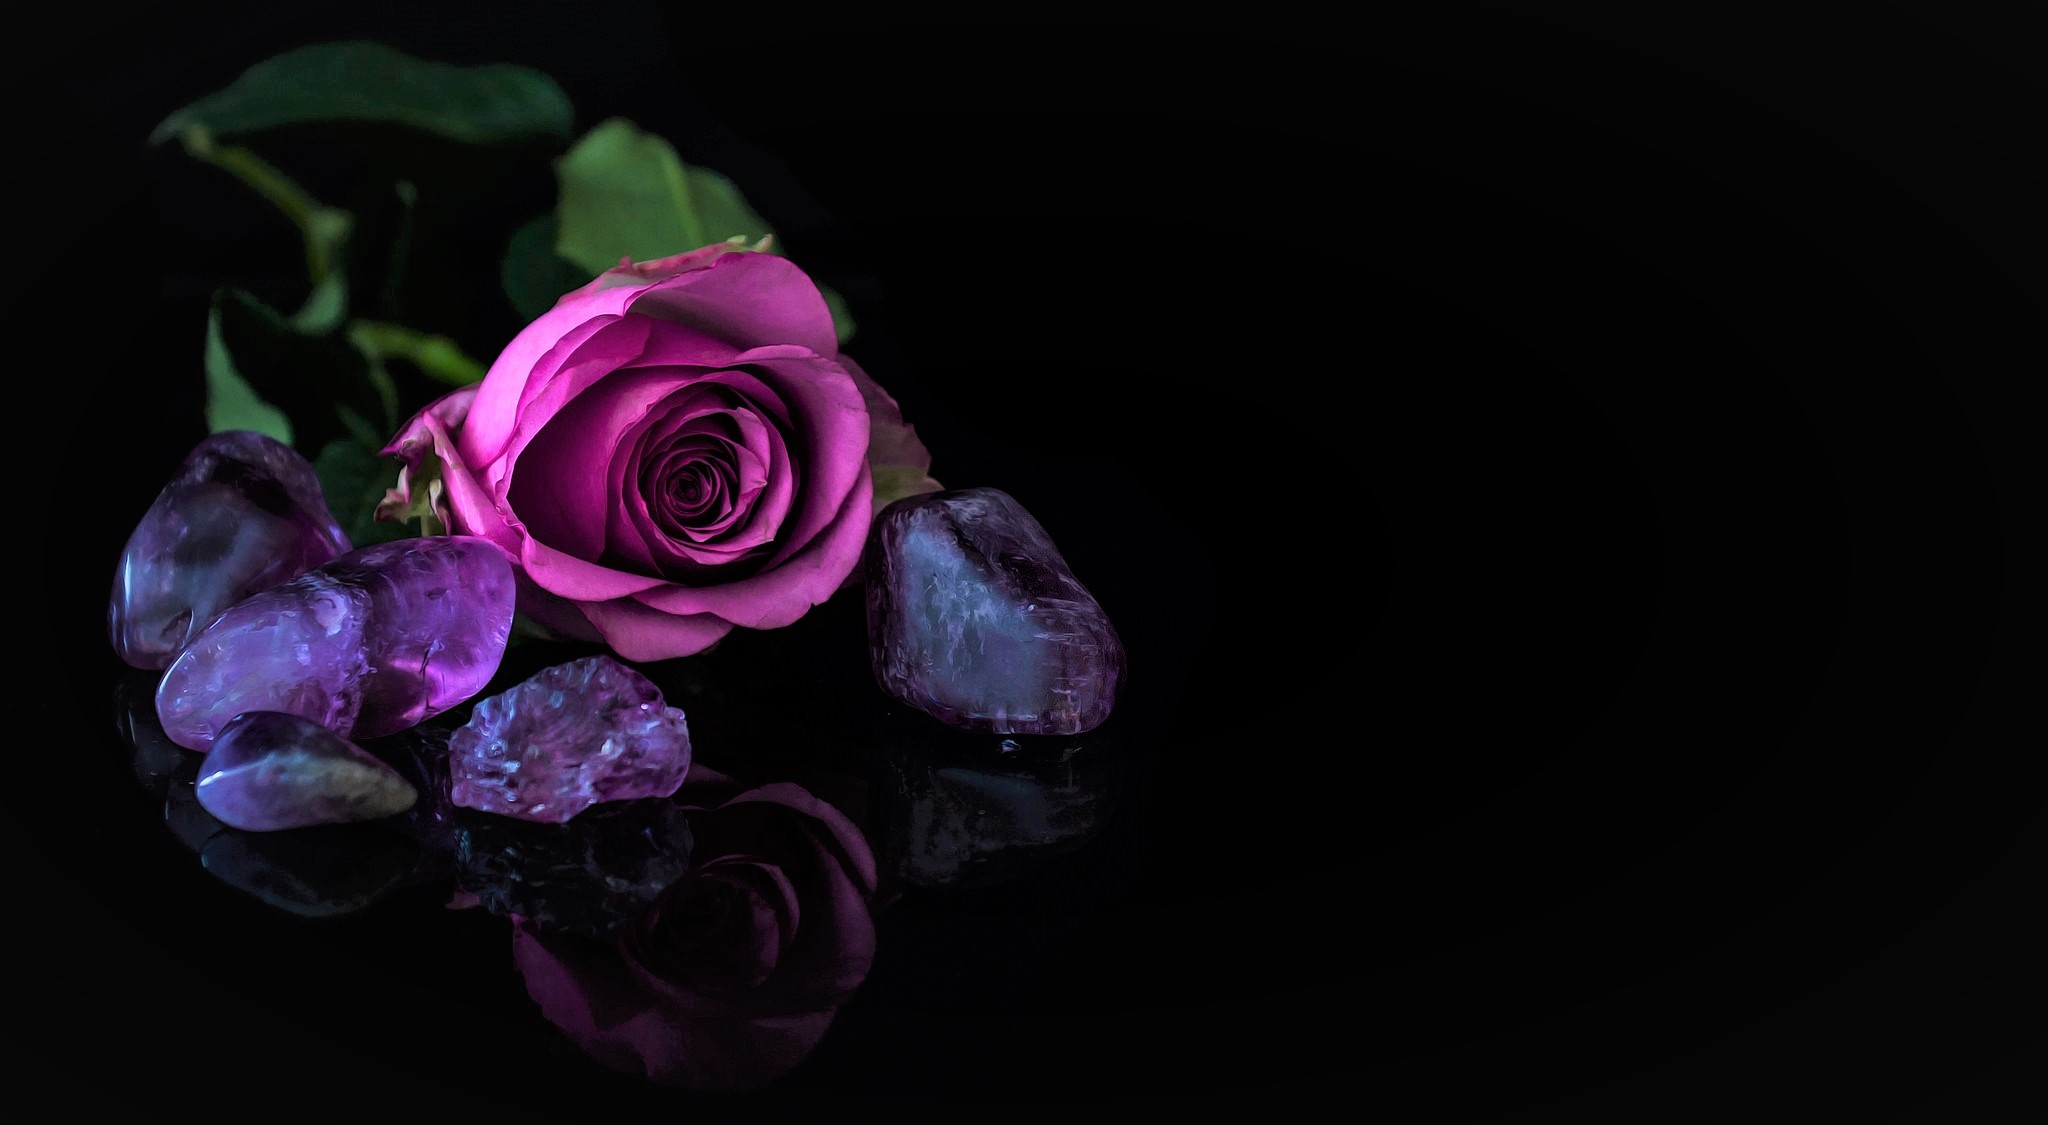 868730 Обои и Фиолетовая Роза картинки на рабочий стол. Скачать  заставки на ПК бесплатно